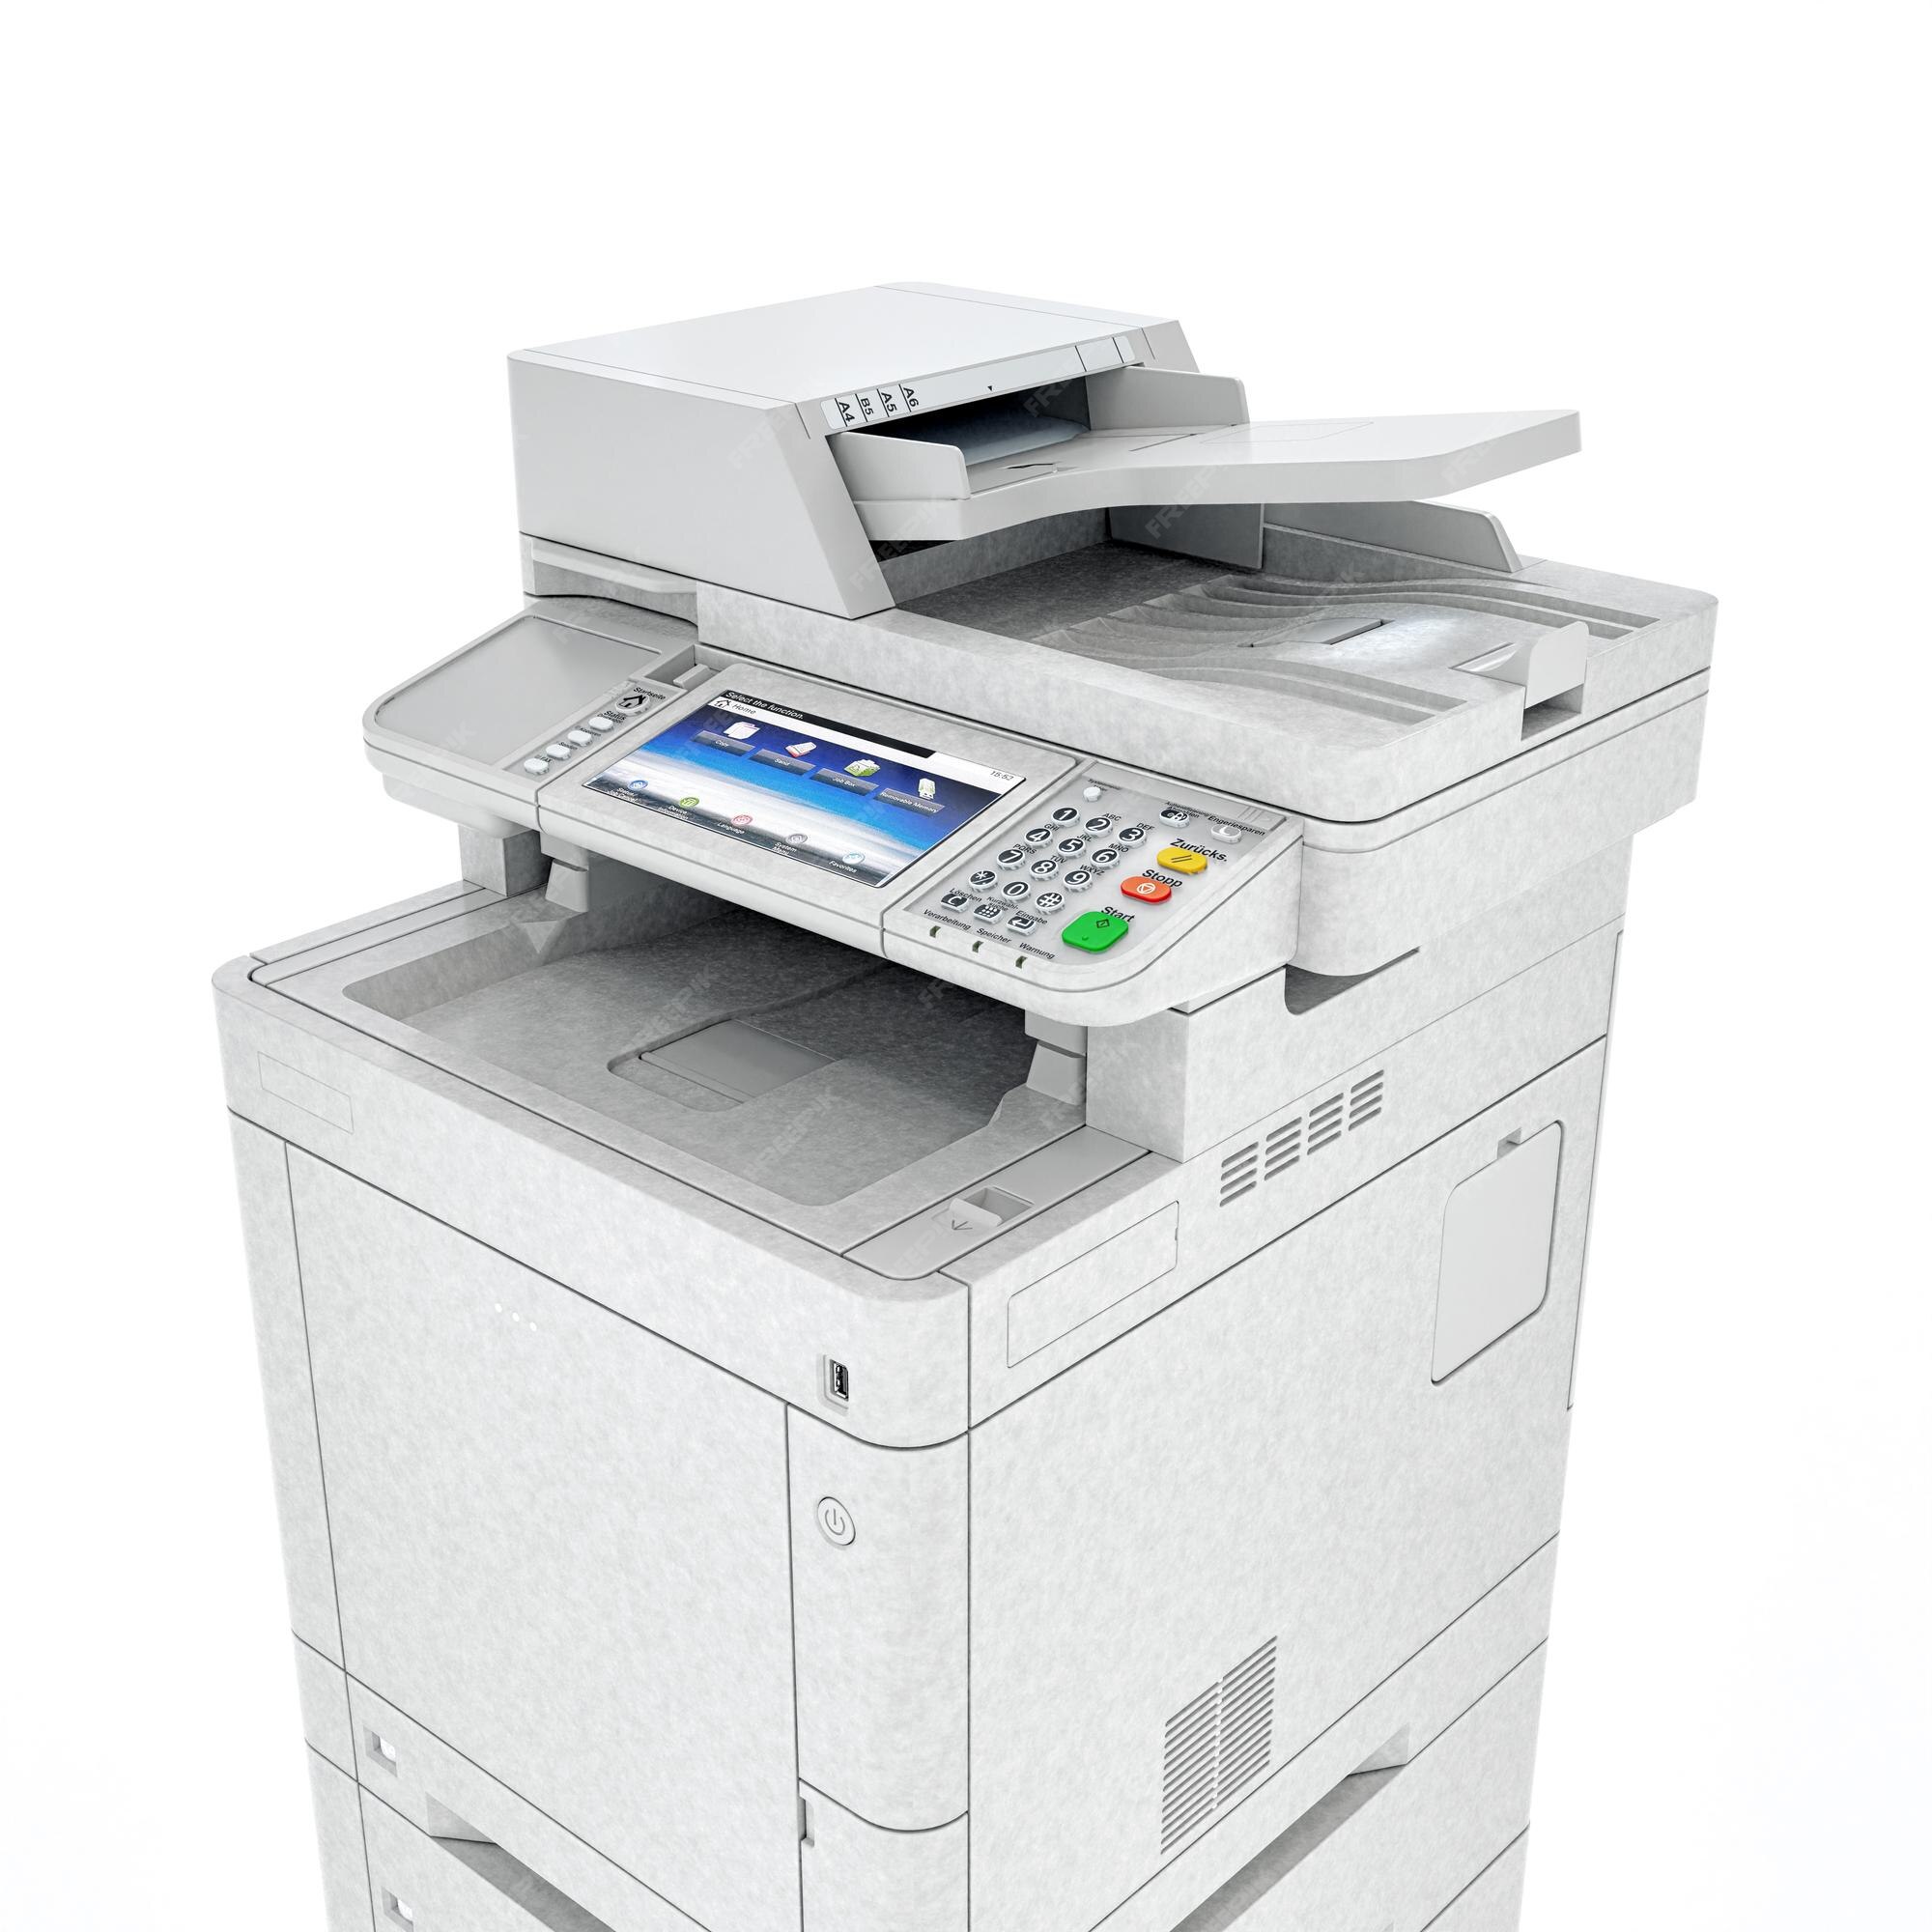 Gobernable Cereza cualquier cosa Escáner de impresora multifunción. aislado tecnología profesional de  office. ilustración 3d. | Foto Premium